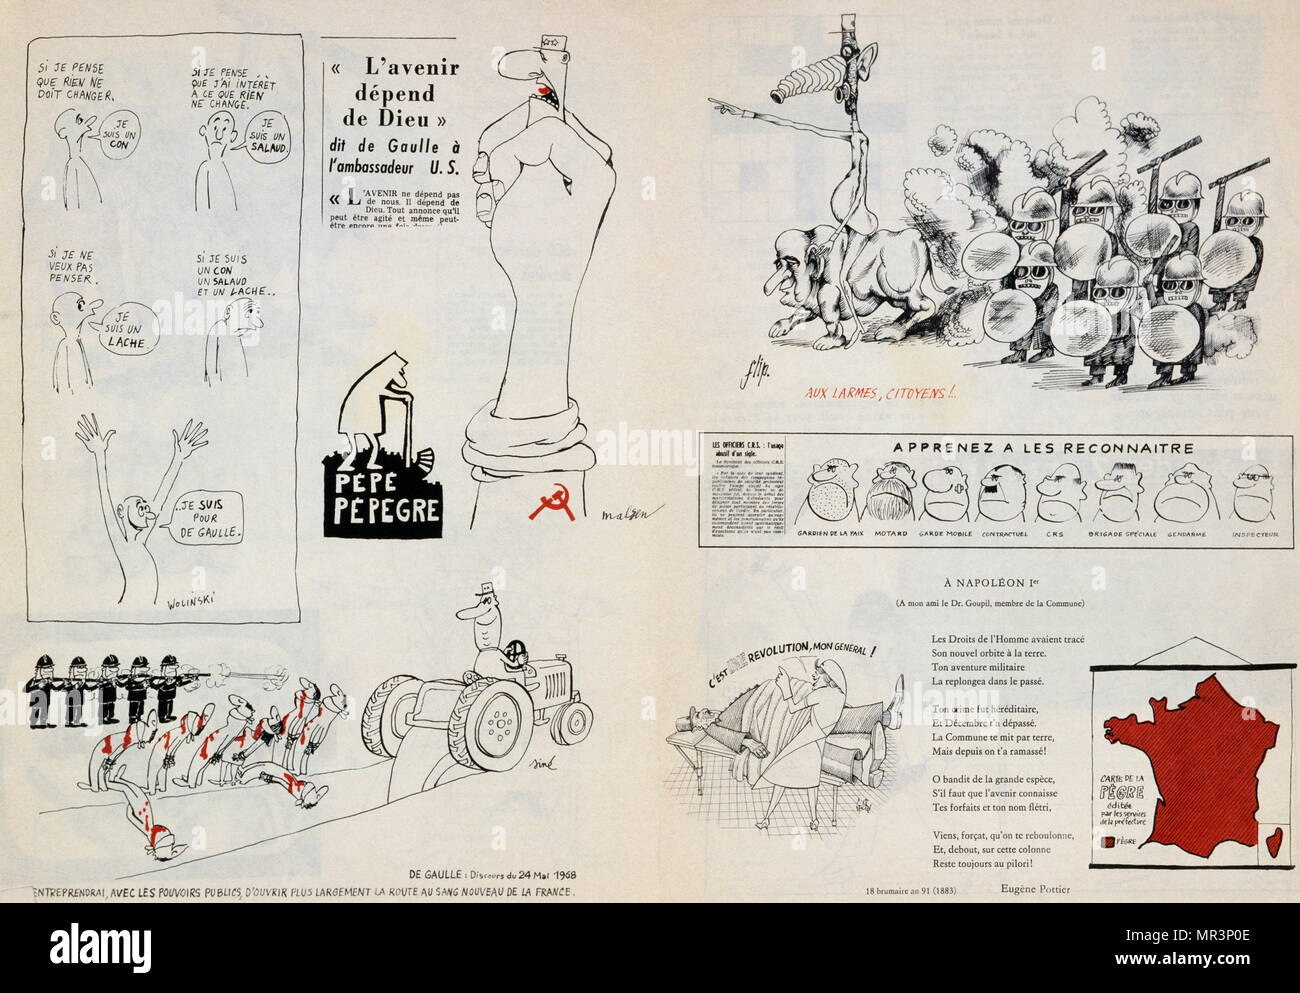 Anti-Charles de Gaulle Cartoons von Georges Wolinski und anderen Satirikern während der 1968 Unruhen in Paris. Wolinski war ein französischer Karikaturist und Comics Schriftsteller. Er wurde am 7. Januar 2015 in einem terroristischen Angriff auf Charlie Hebdo zusammen mit anderen Angestellten getötet Stockfoto